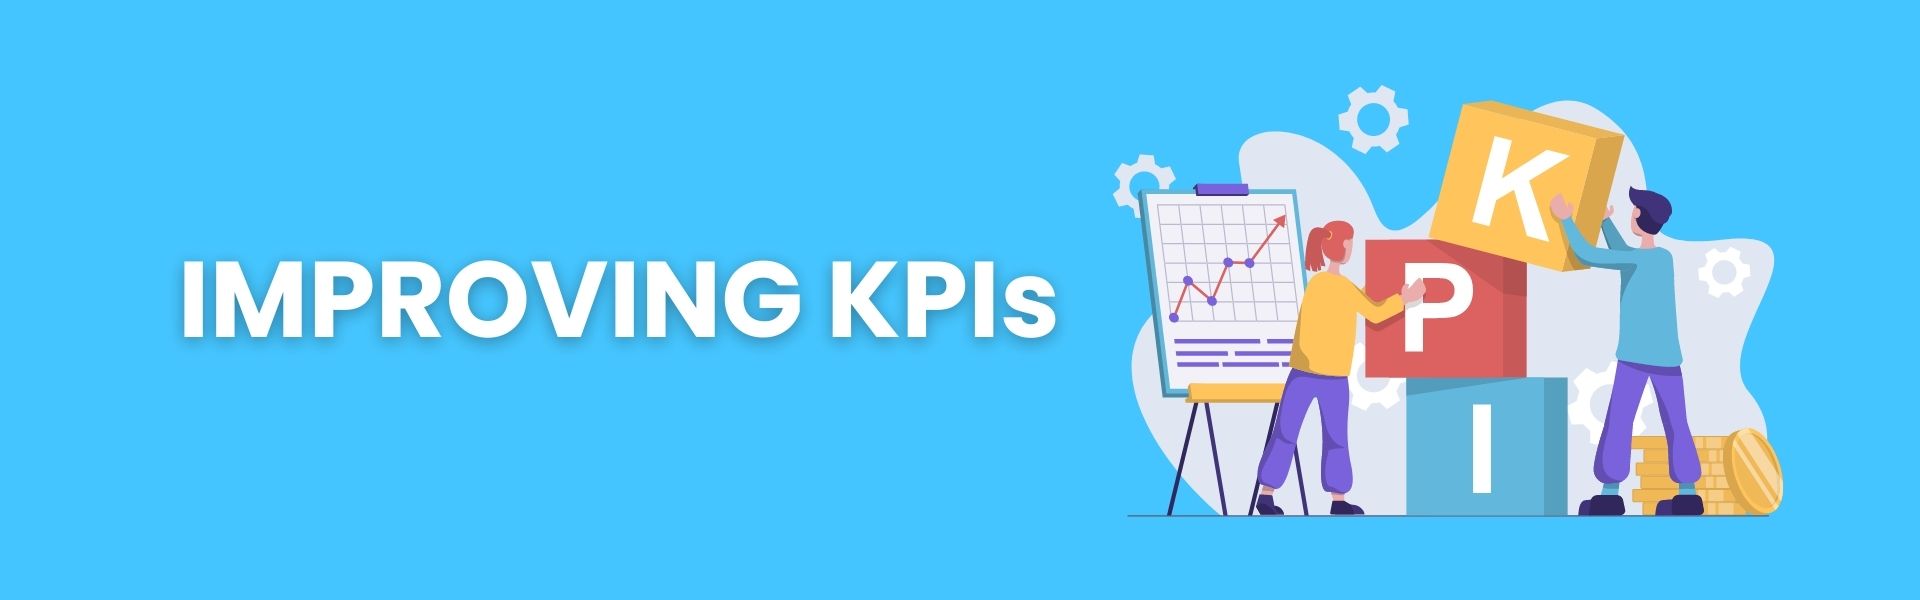 Improving KPIs